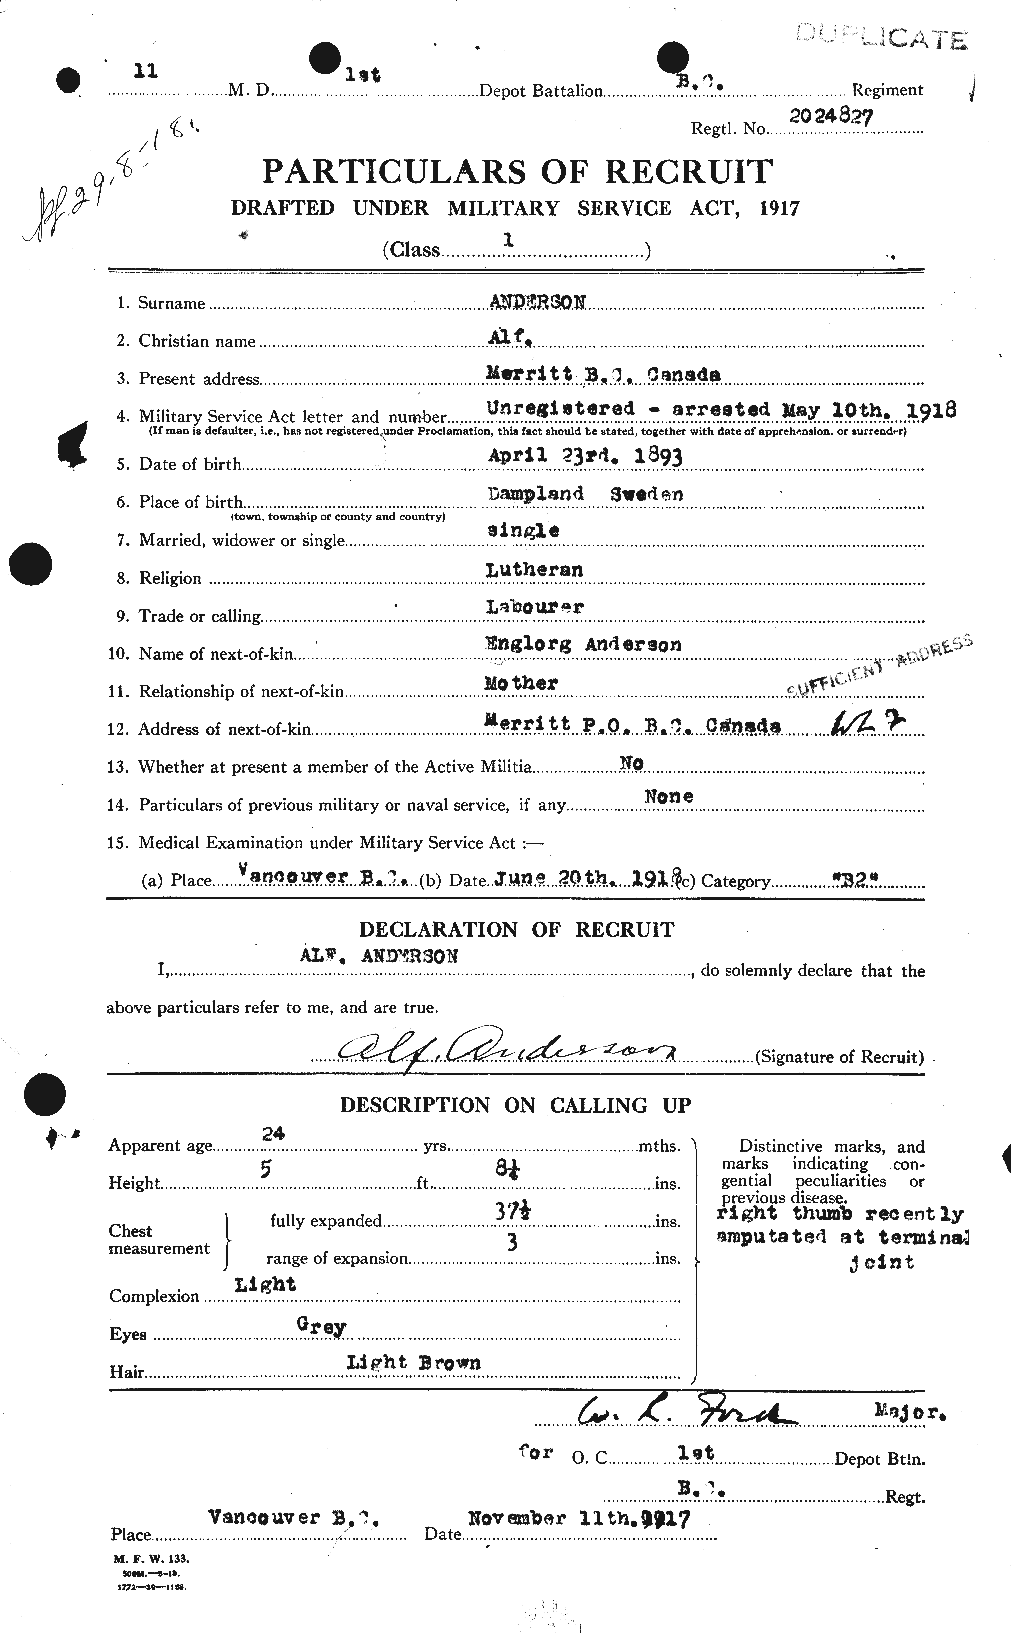 Dossiers du Personnel de la Première Guerre mondiale - CEC 209470a